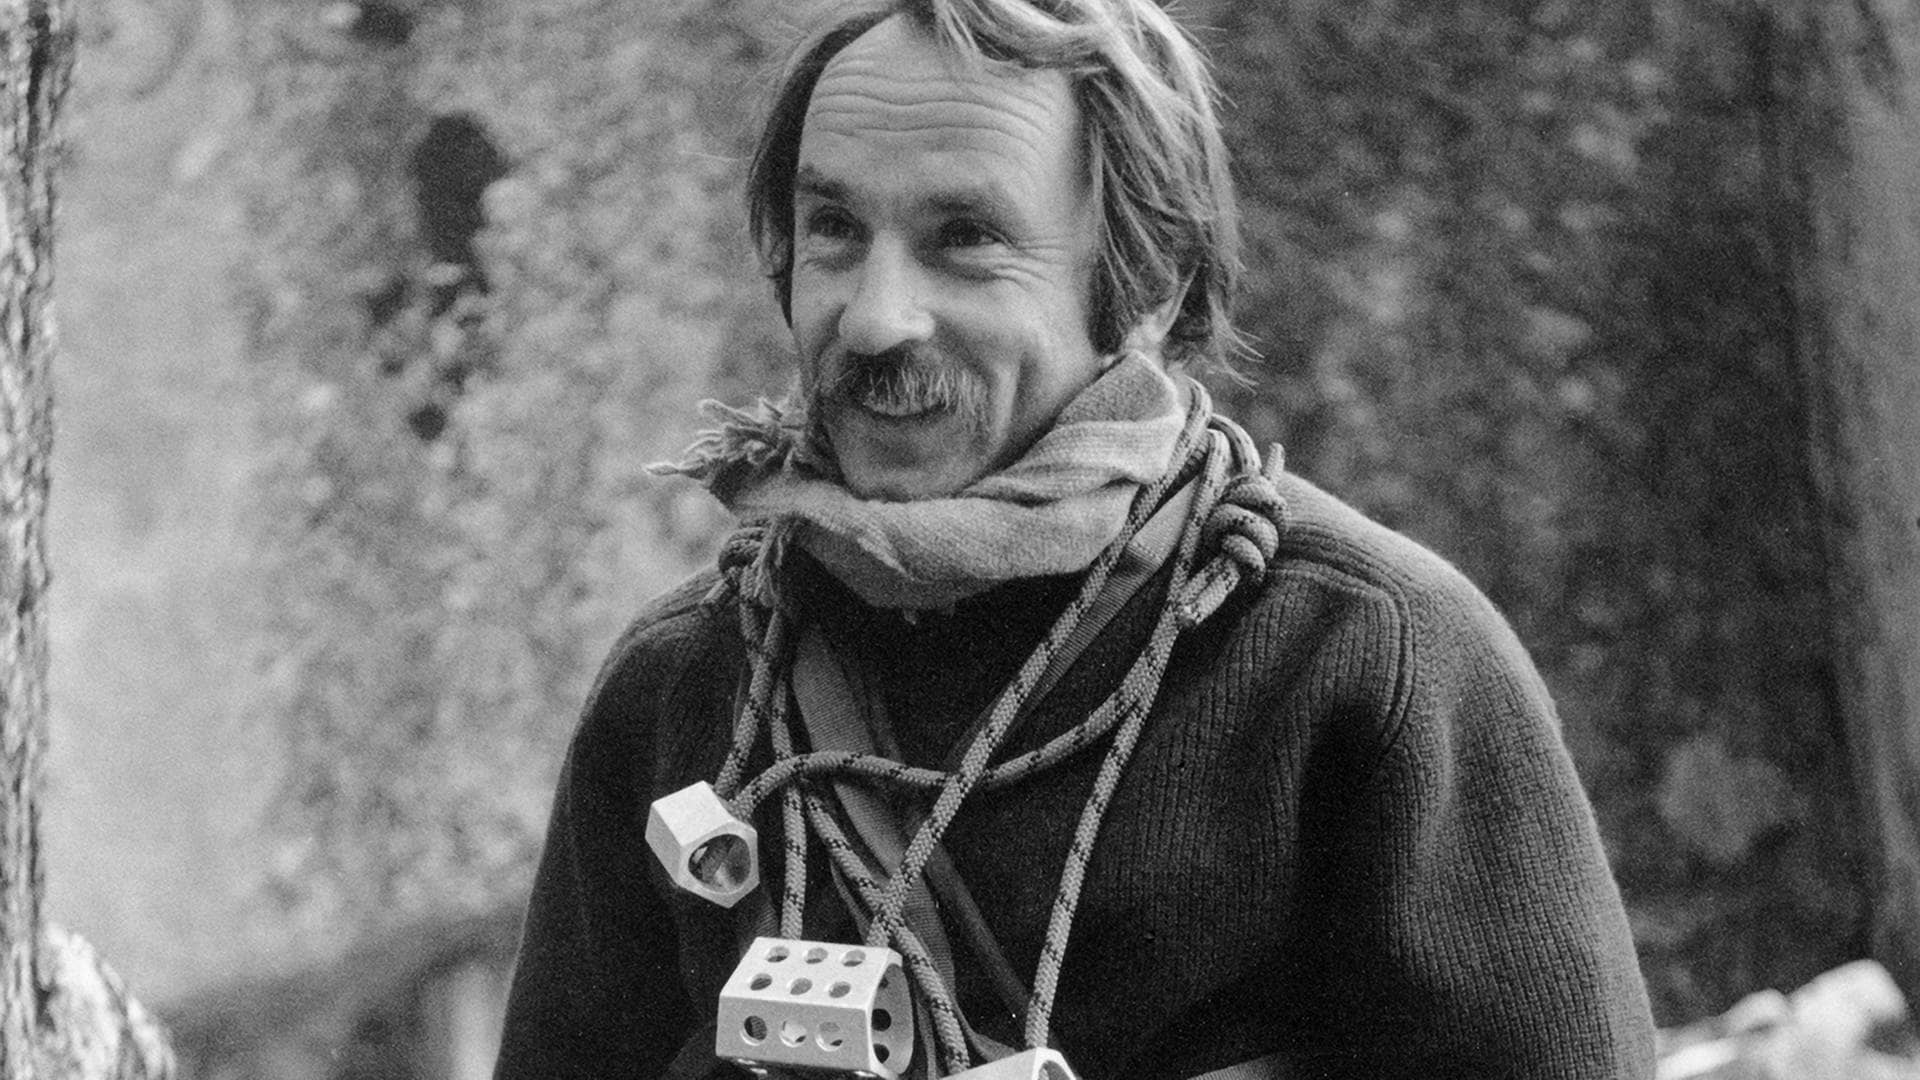 Die ungefähr im Jahr 1974 entstandene von Patagonia zur Vefügung gestellte Aufnahme zeigt Yvon Chouinard, Patagonia-Gründer, mit Ausrüstung zum Klettern (Foto: dpa Bildfunk, picture alliance/dpa/ZUMA Press Wire | Patagonia)